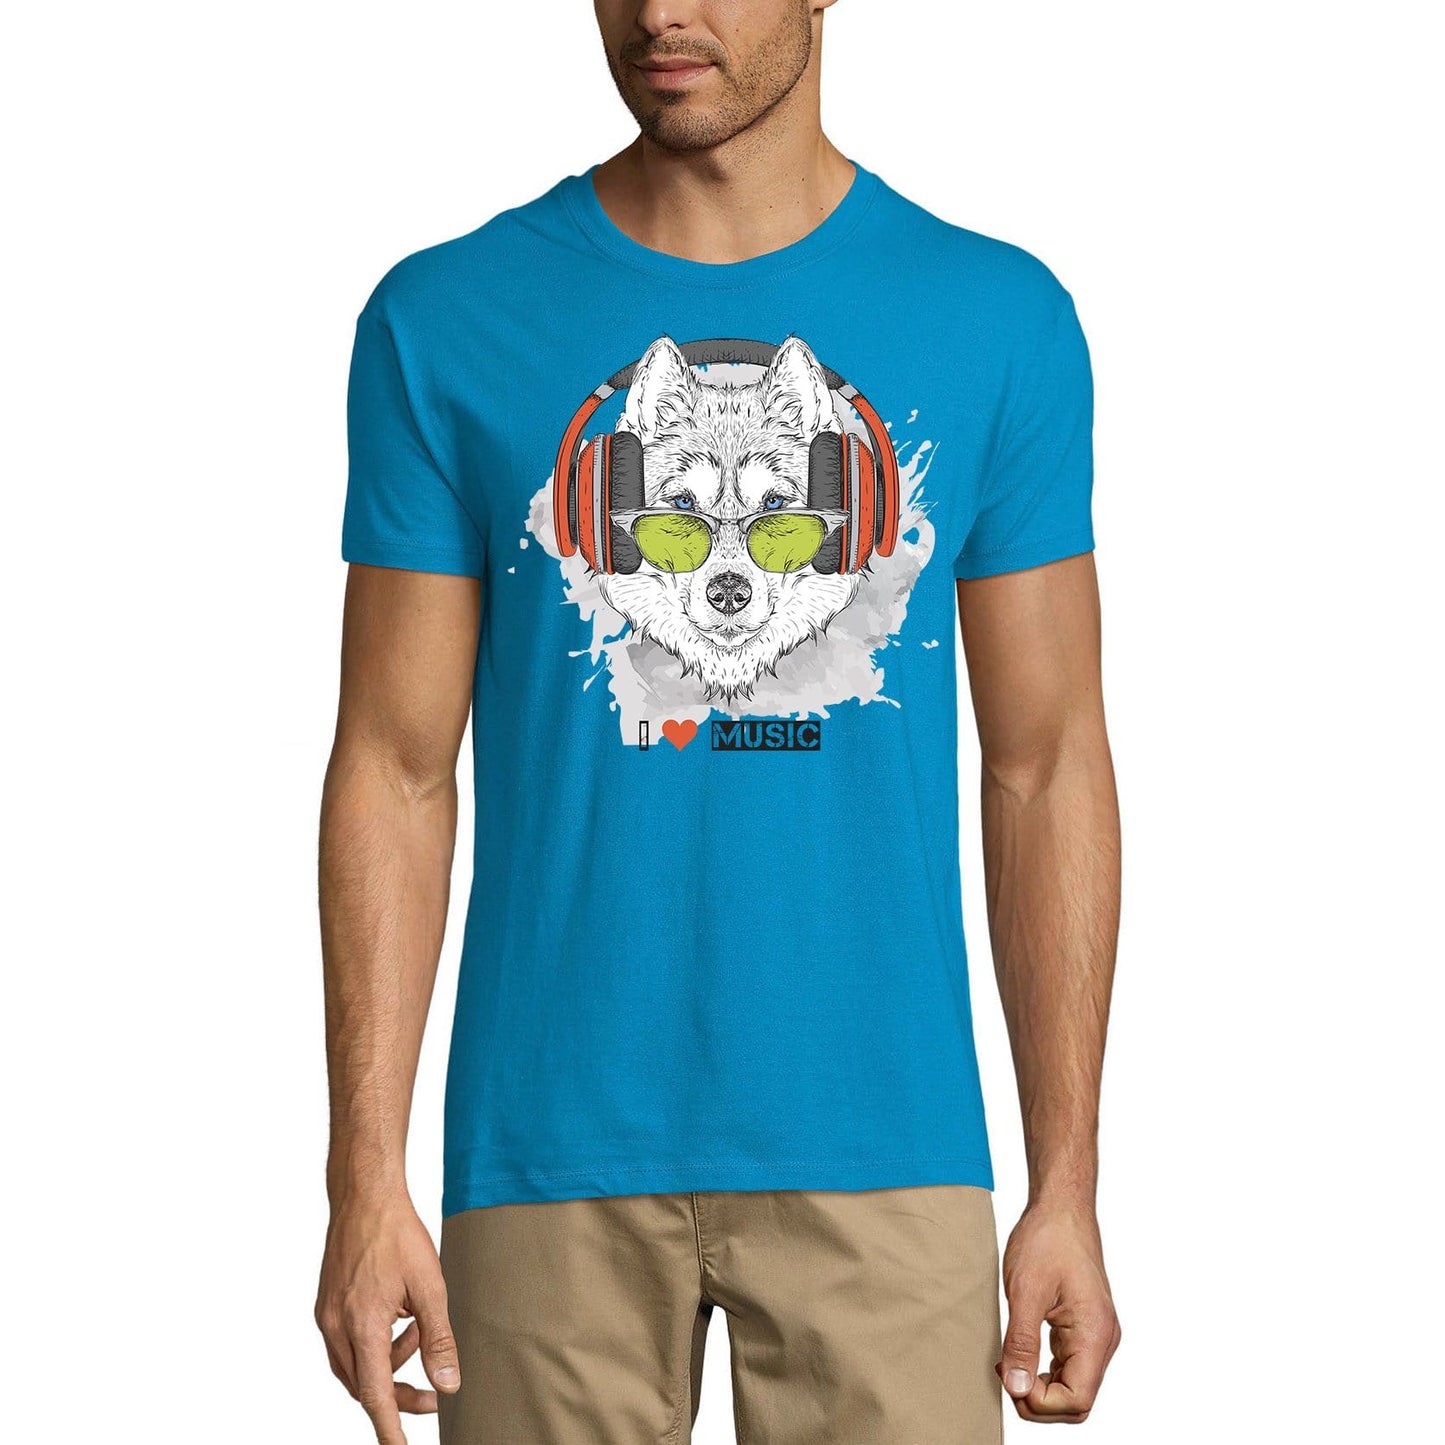 ULTRABASIC Men's Novelty T-Shirt Cool Husky - I Love Music Funny Tee Shirt